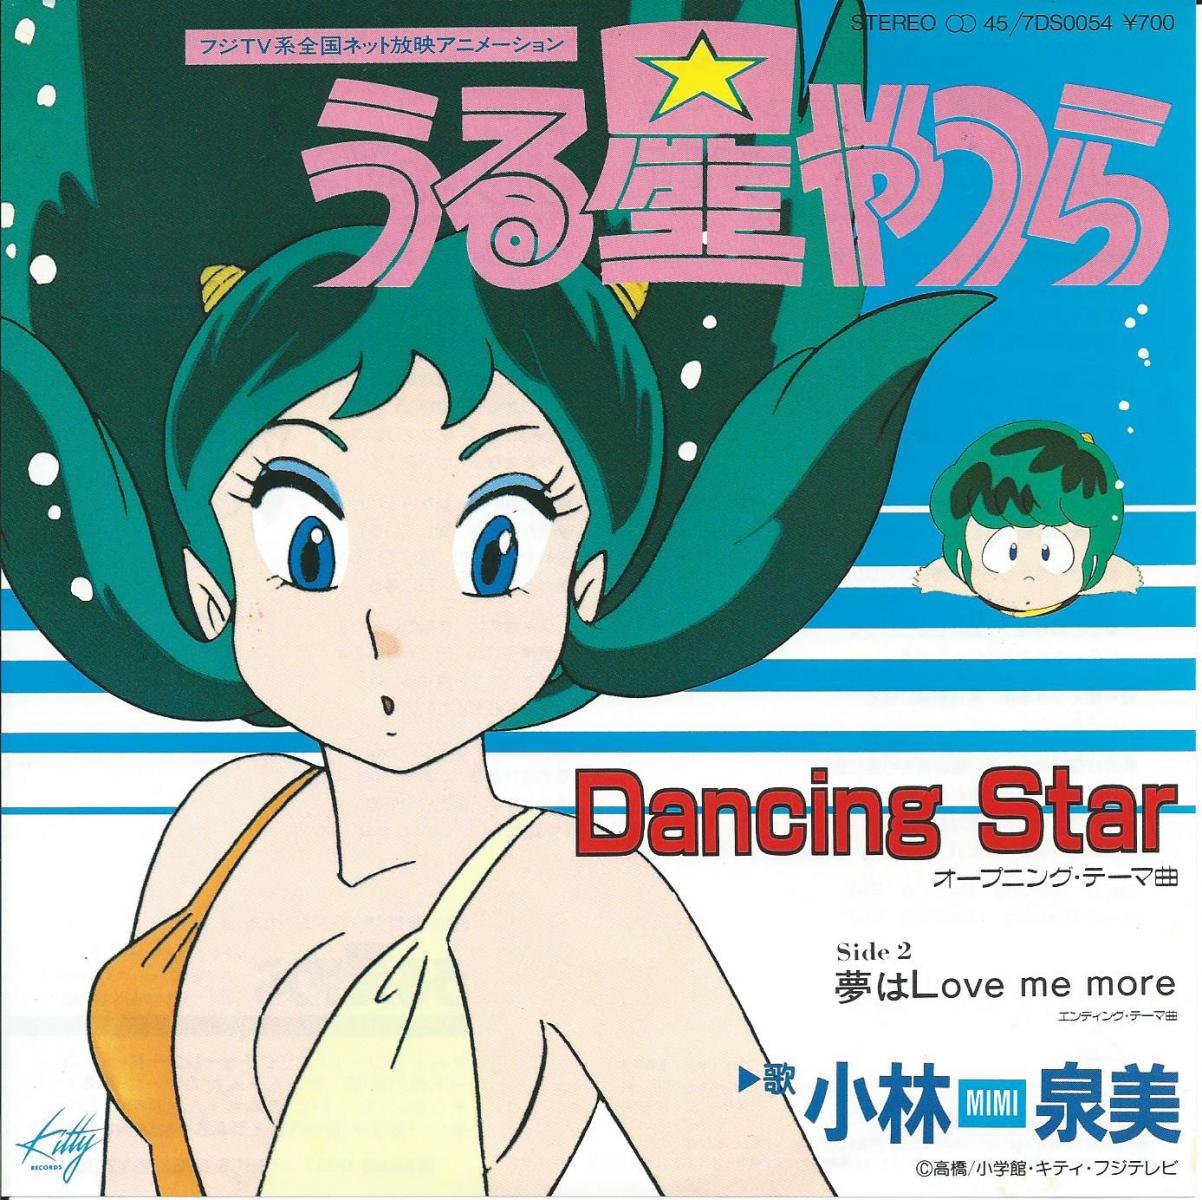 小林泉美 MIMI / DANCING STAR / 夢はLOVE ME MORE (うる星やつら) (7 